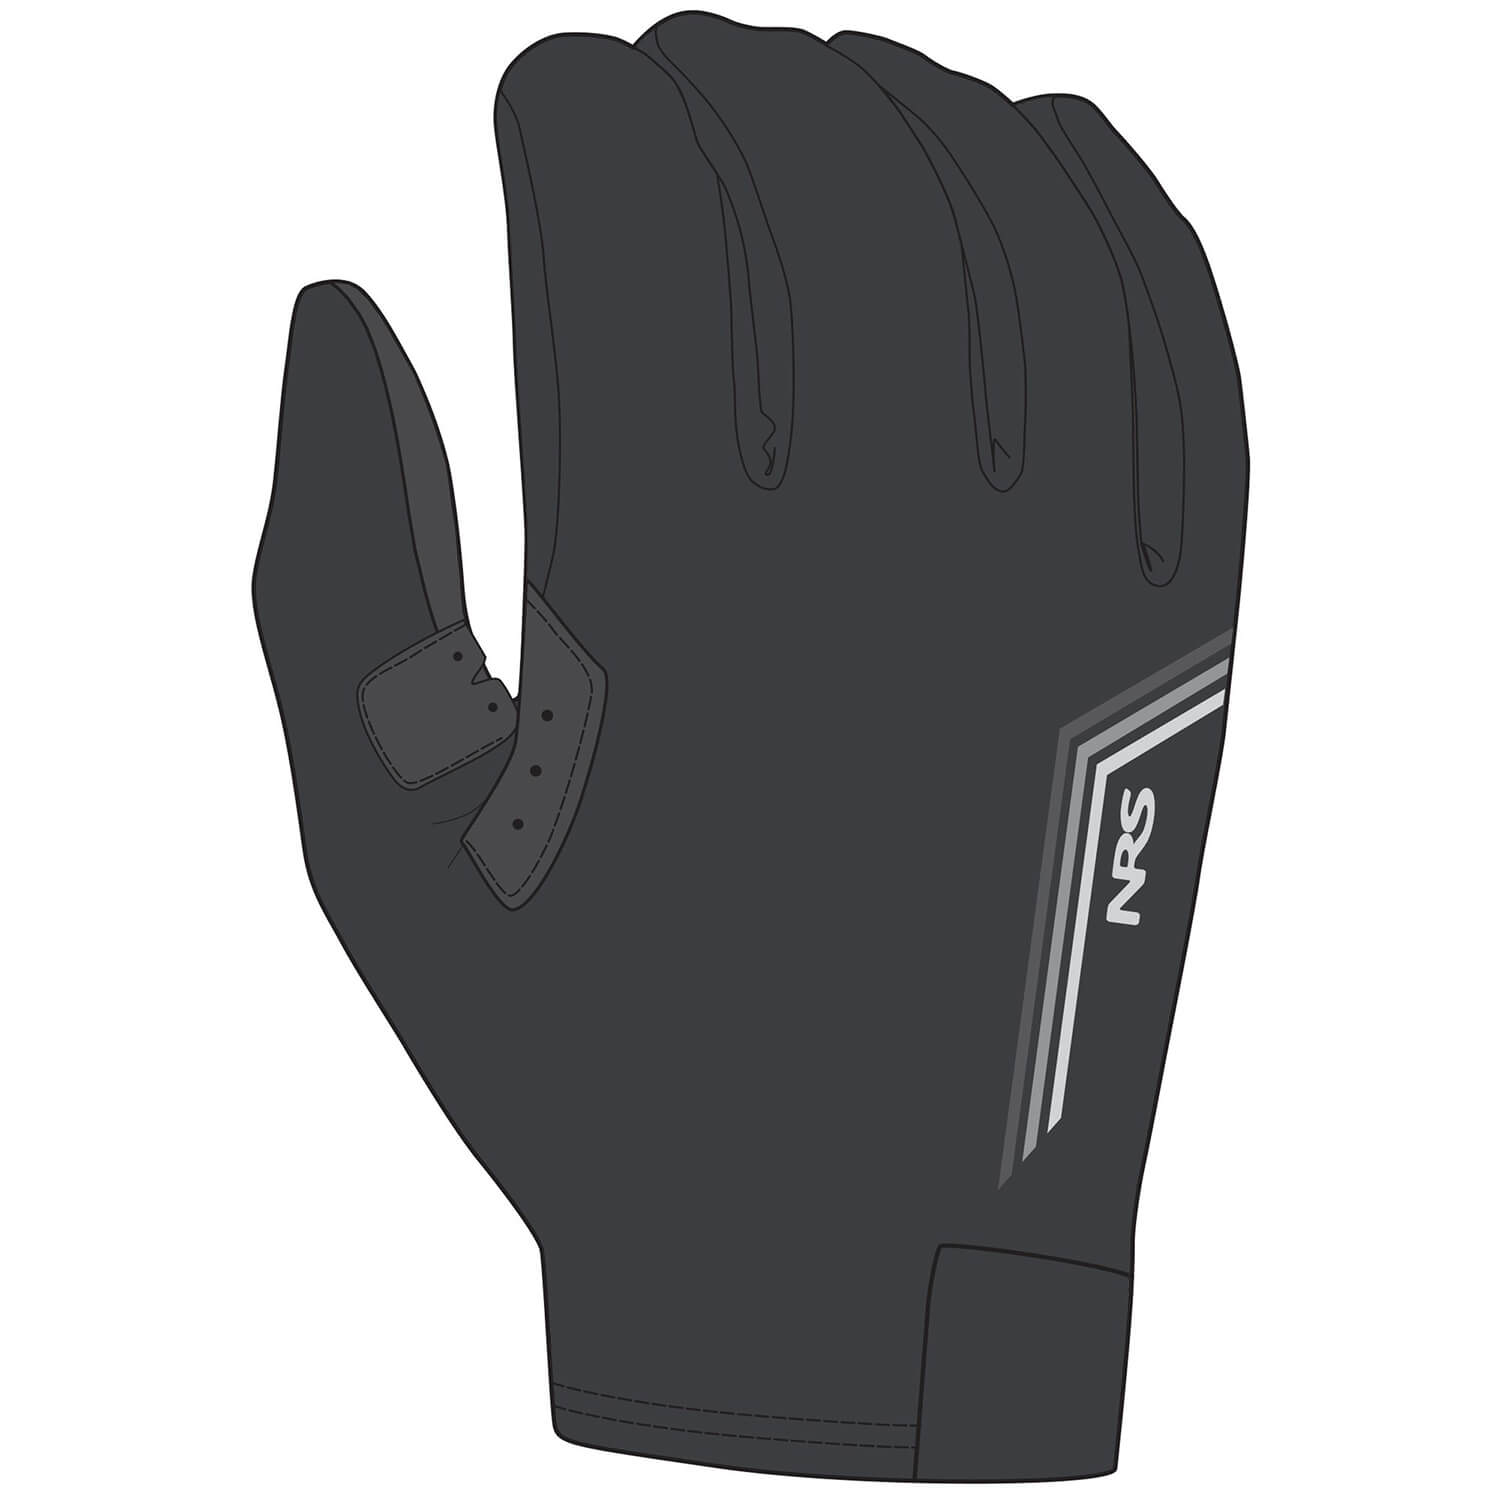 NRS Handschuhe für Boot und Kajak Mens Cove Gloves Schwarz - Bild 1 von 1